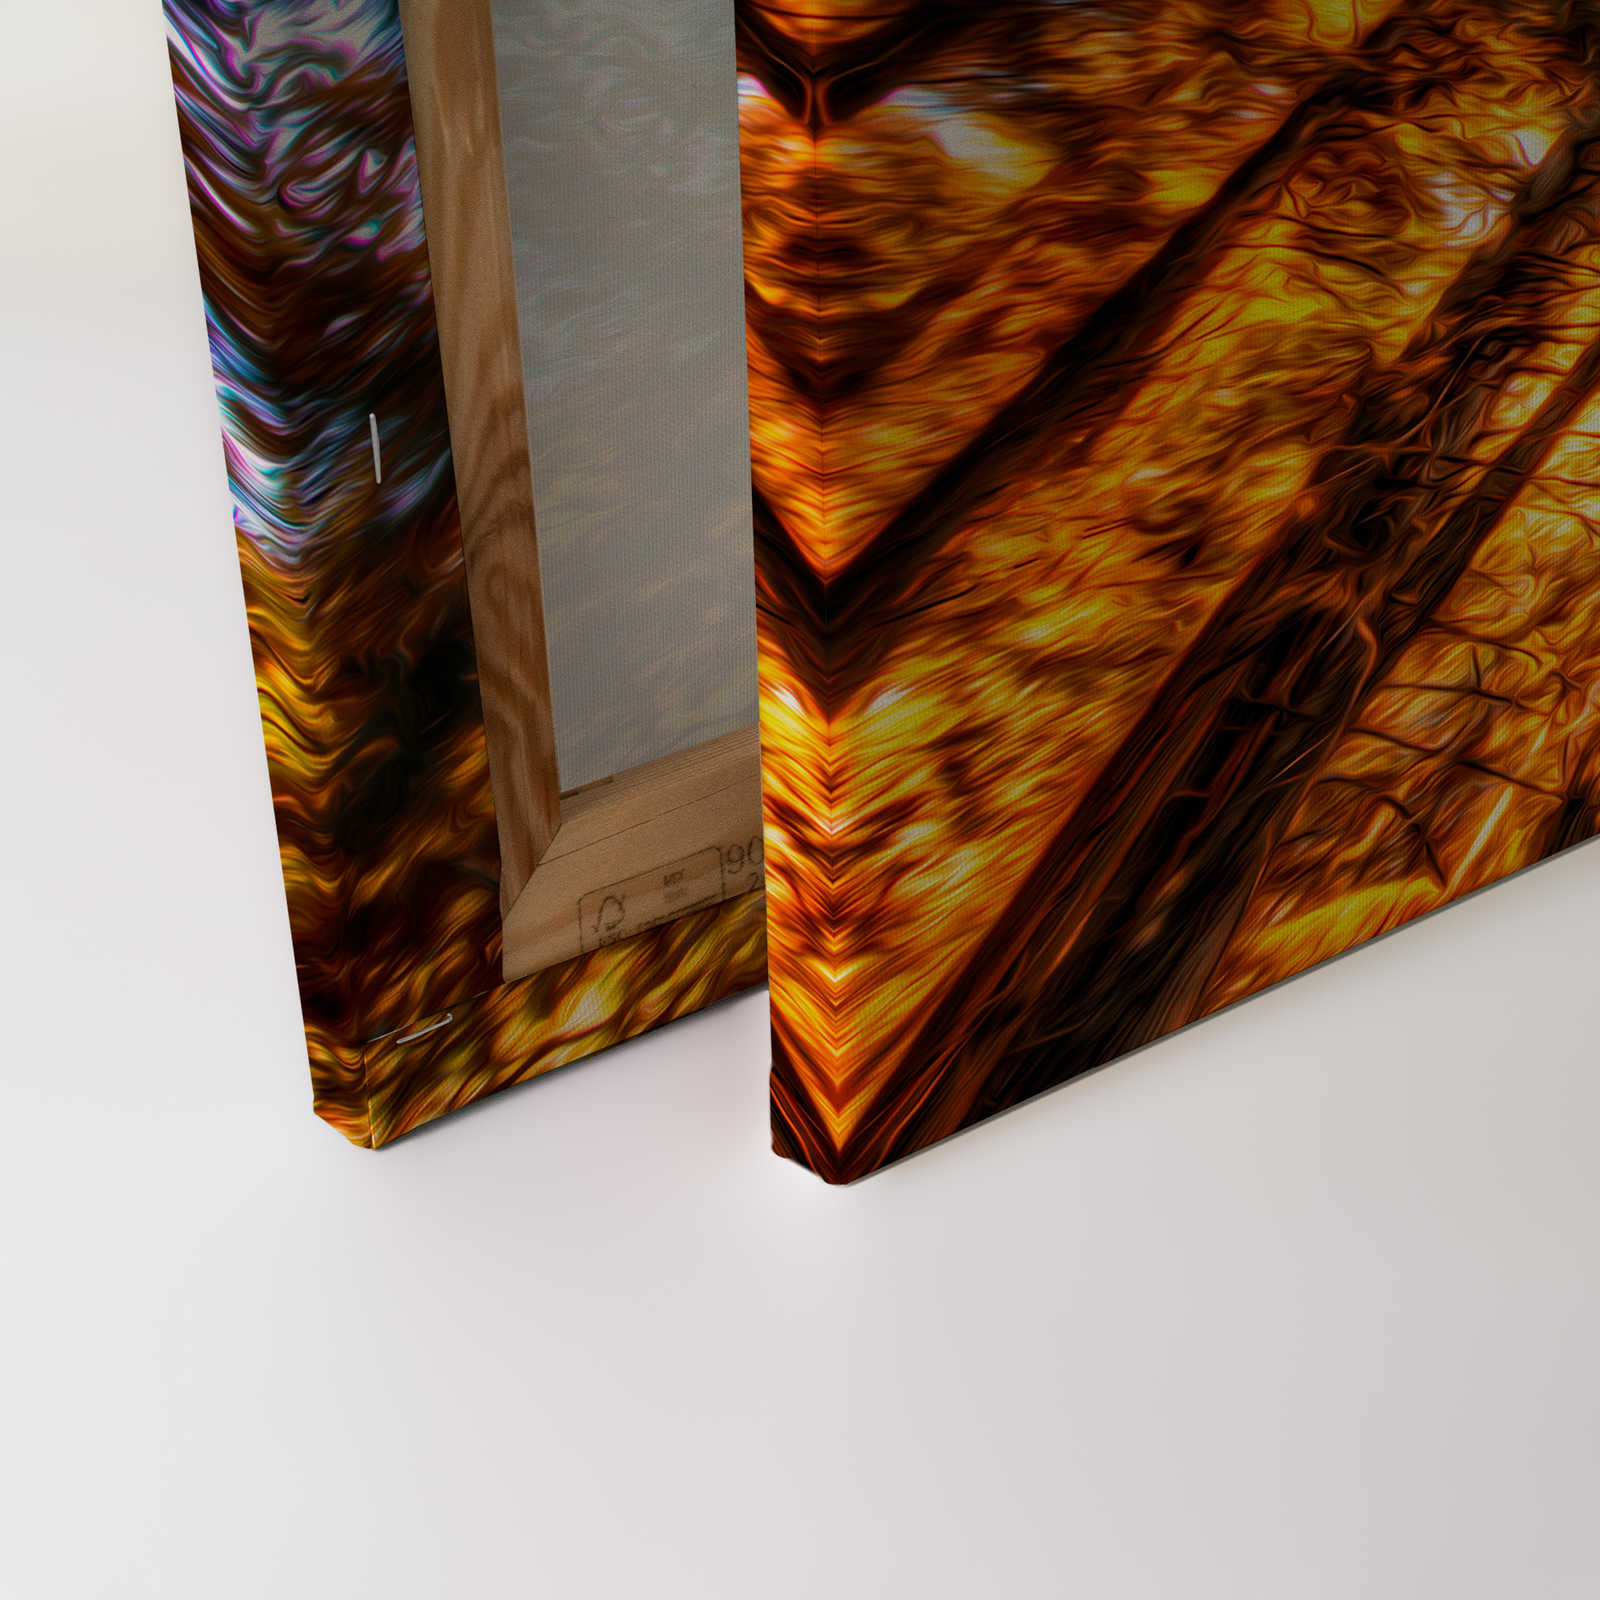             Leinwandbild Blick in die Baumkrone in glühenden Farben – 1,20 m x 0,80 m
        